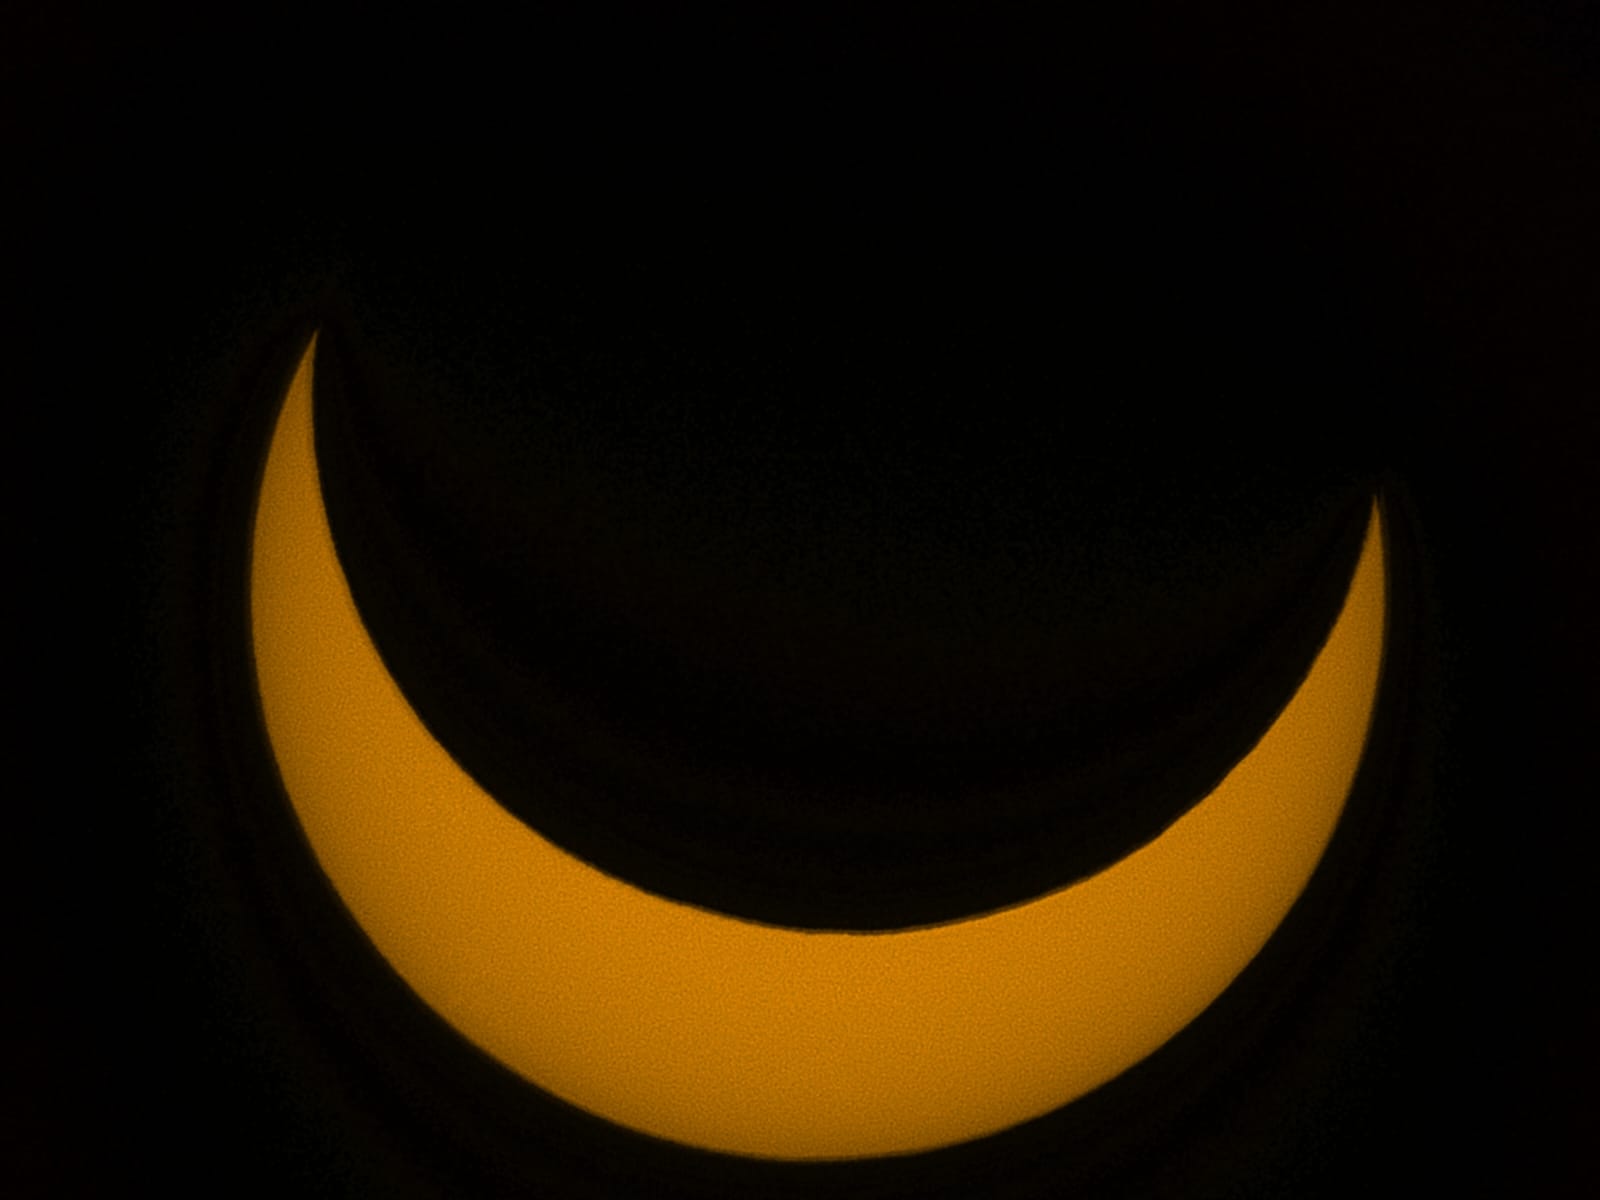 annular eclipse